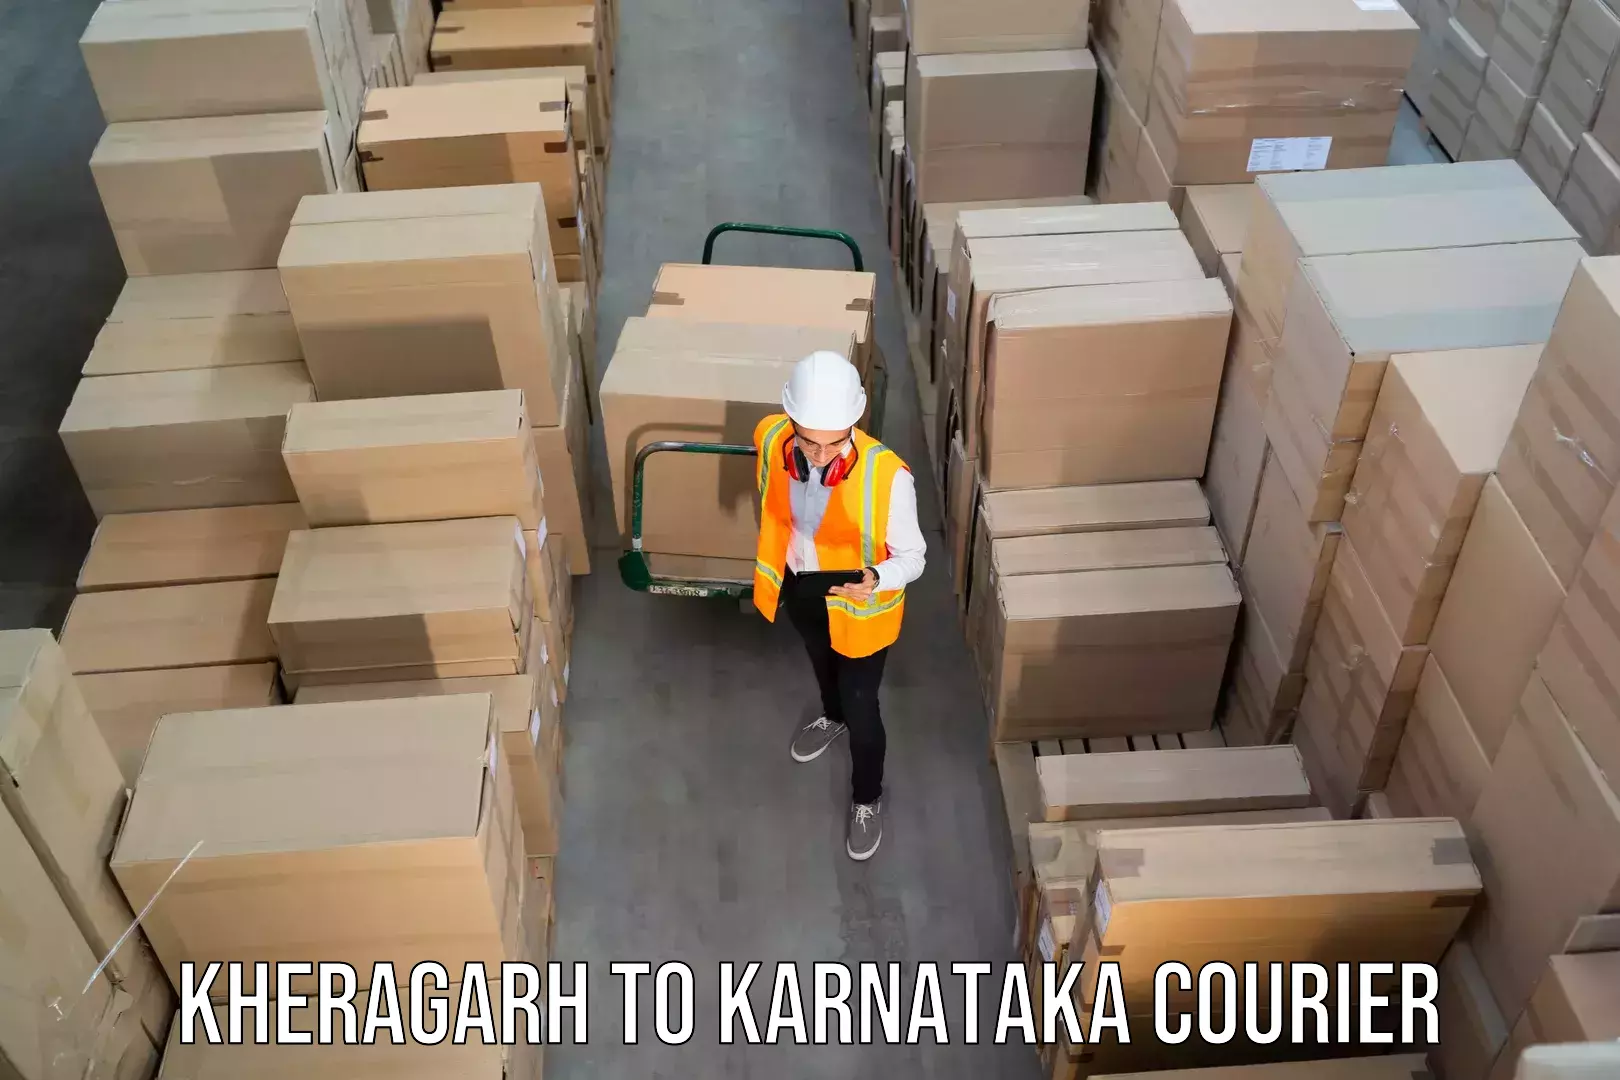 Regular parcel service Kheragarh to Assaigoli